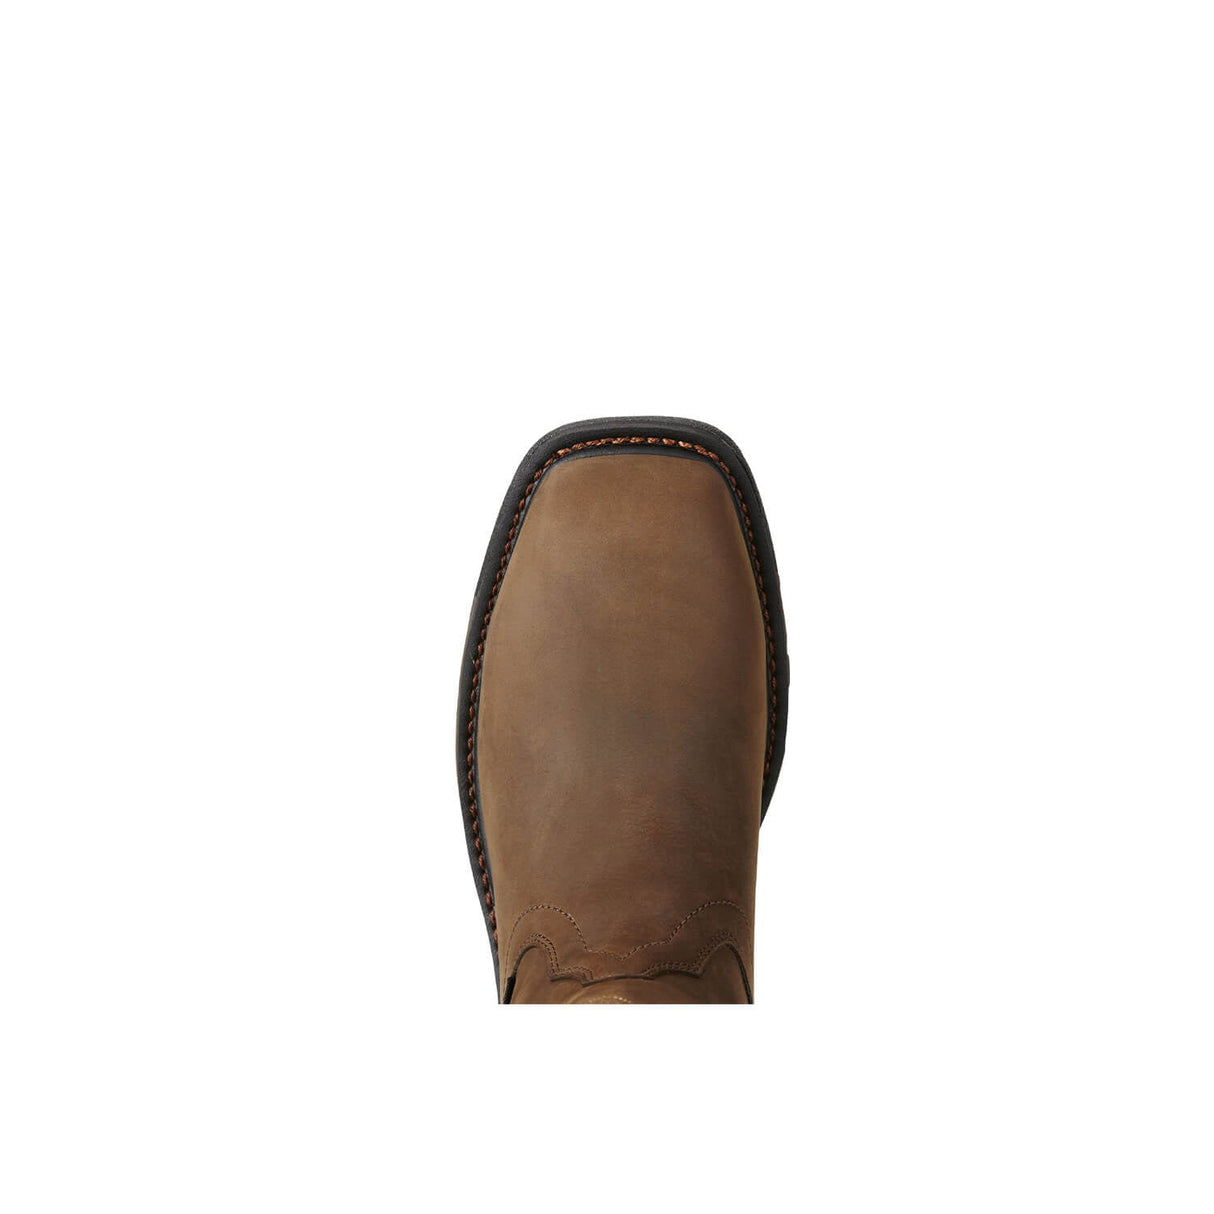 Ariat-WorkHog Wellington Men's Composite-Toe Boot WP-10020092-Steel Toes-5